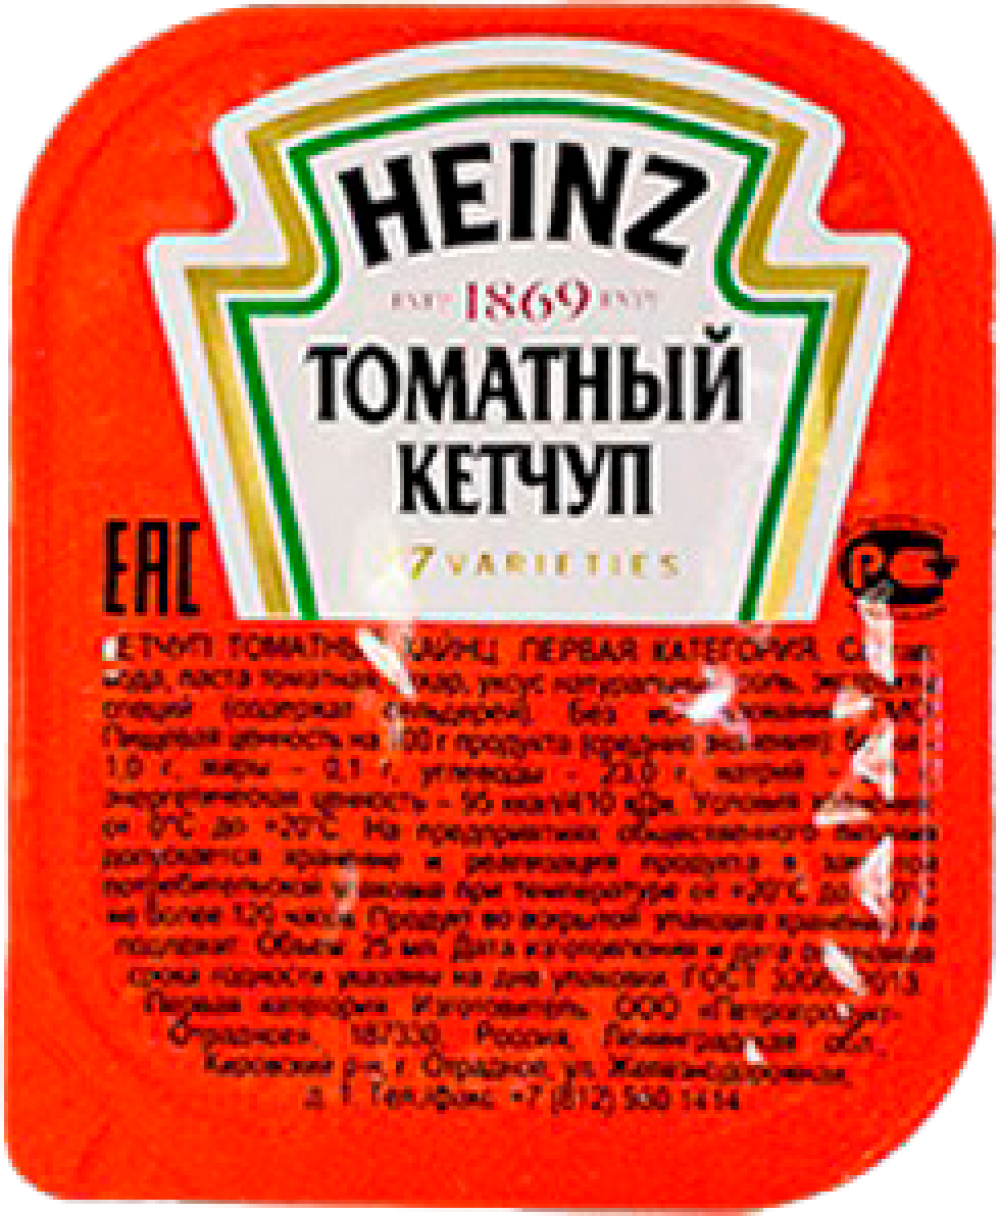 Томатный кетчуп «Heinz»